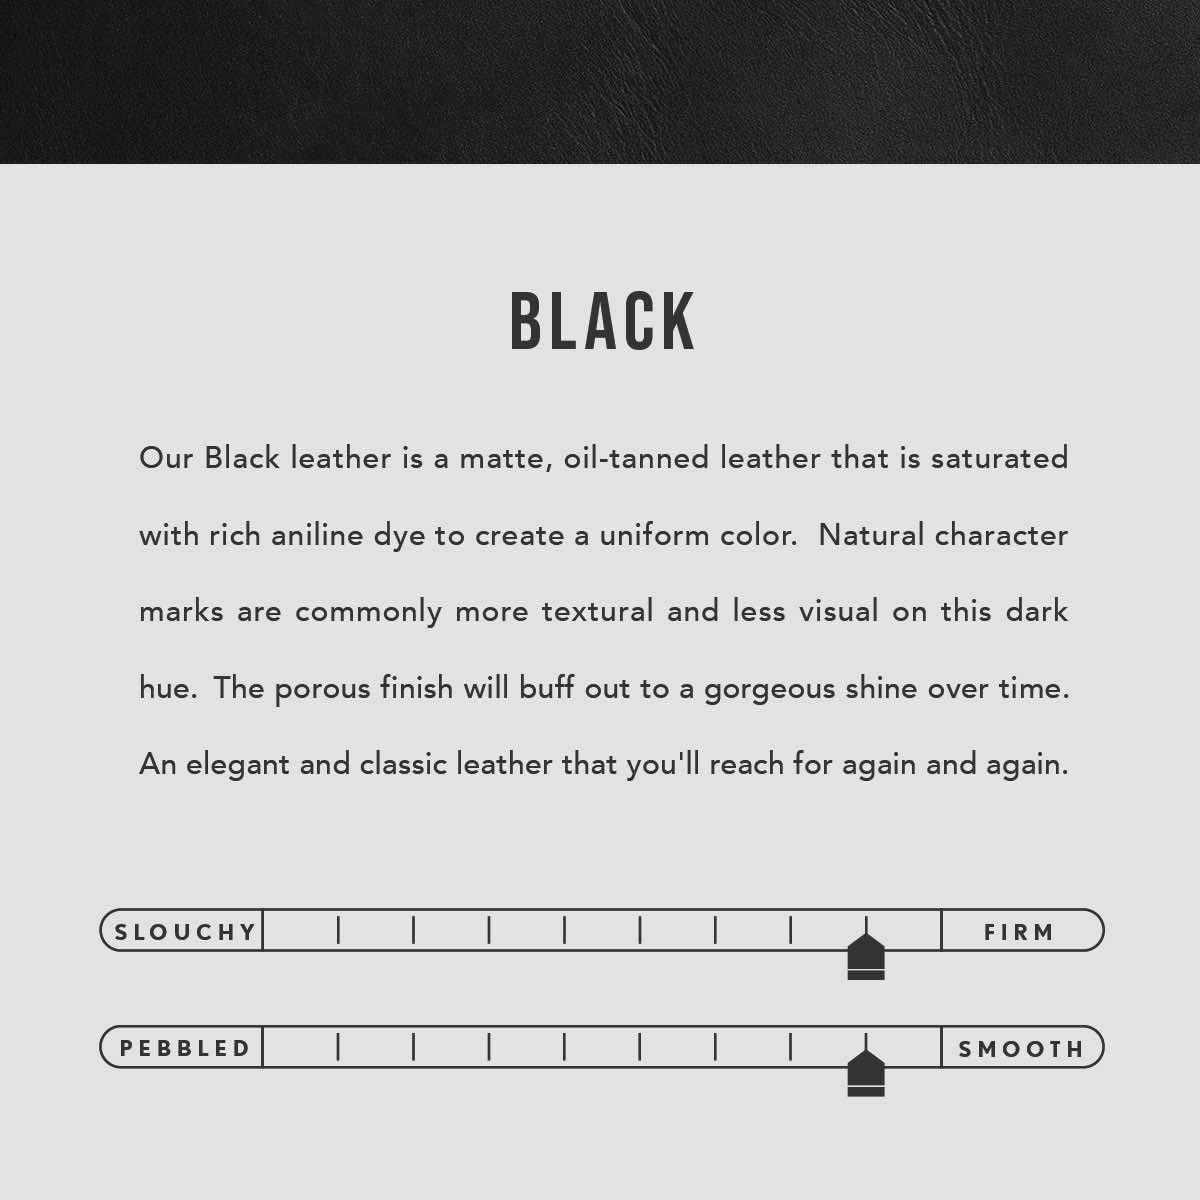 Black | infographic